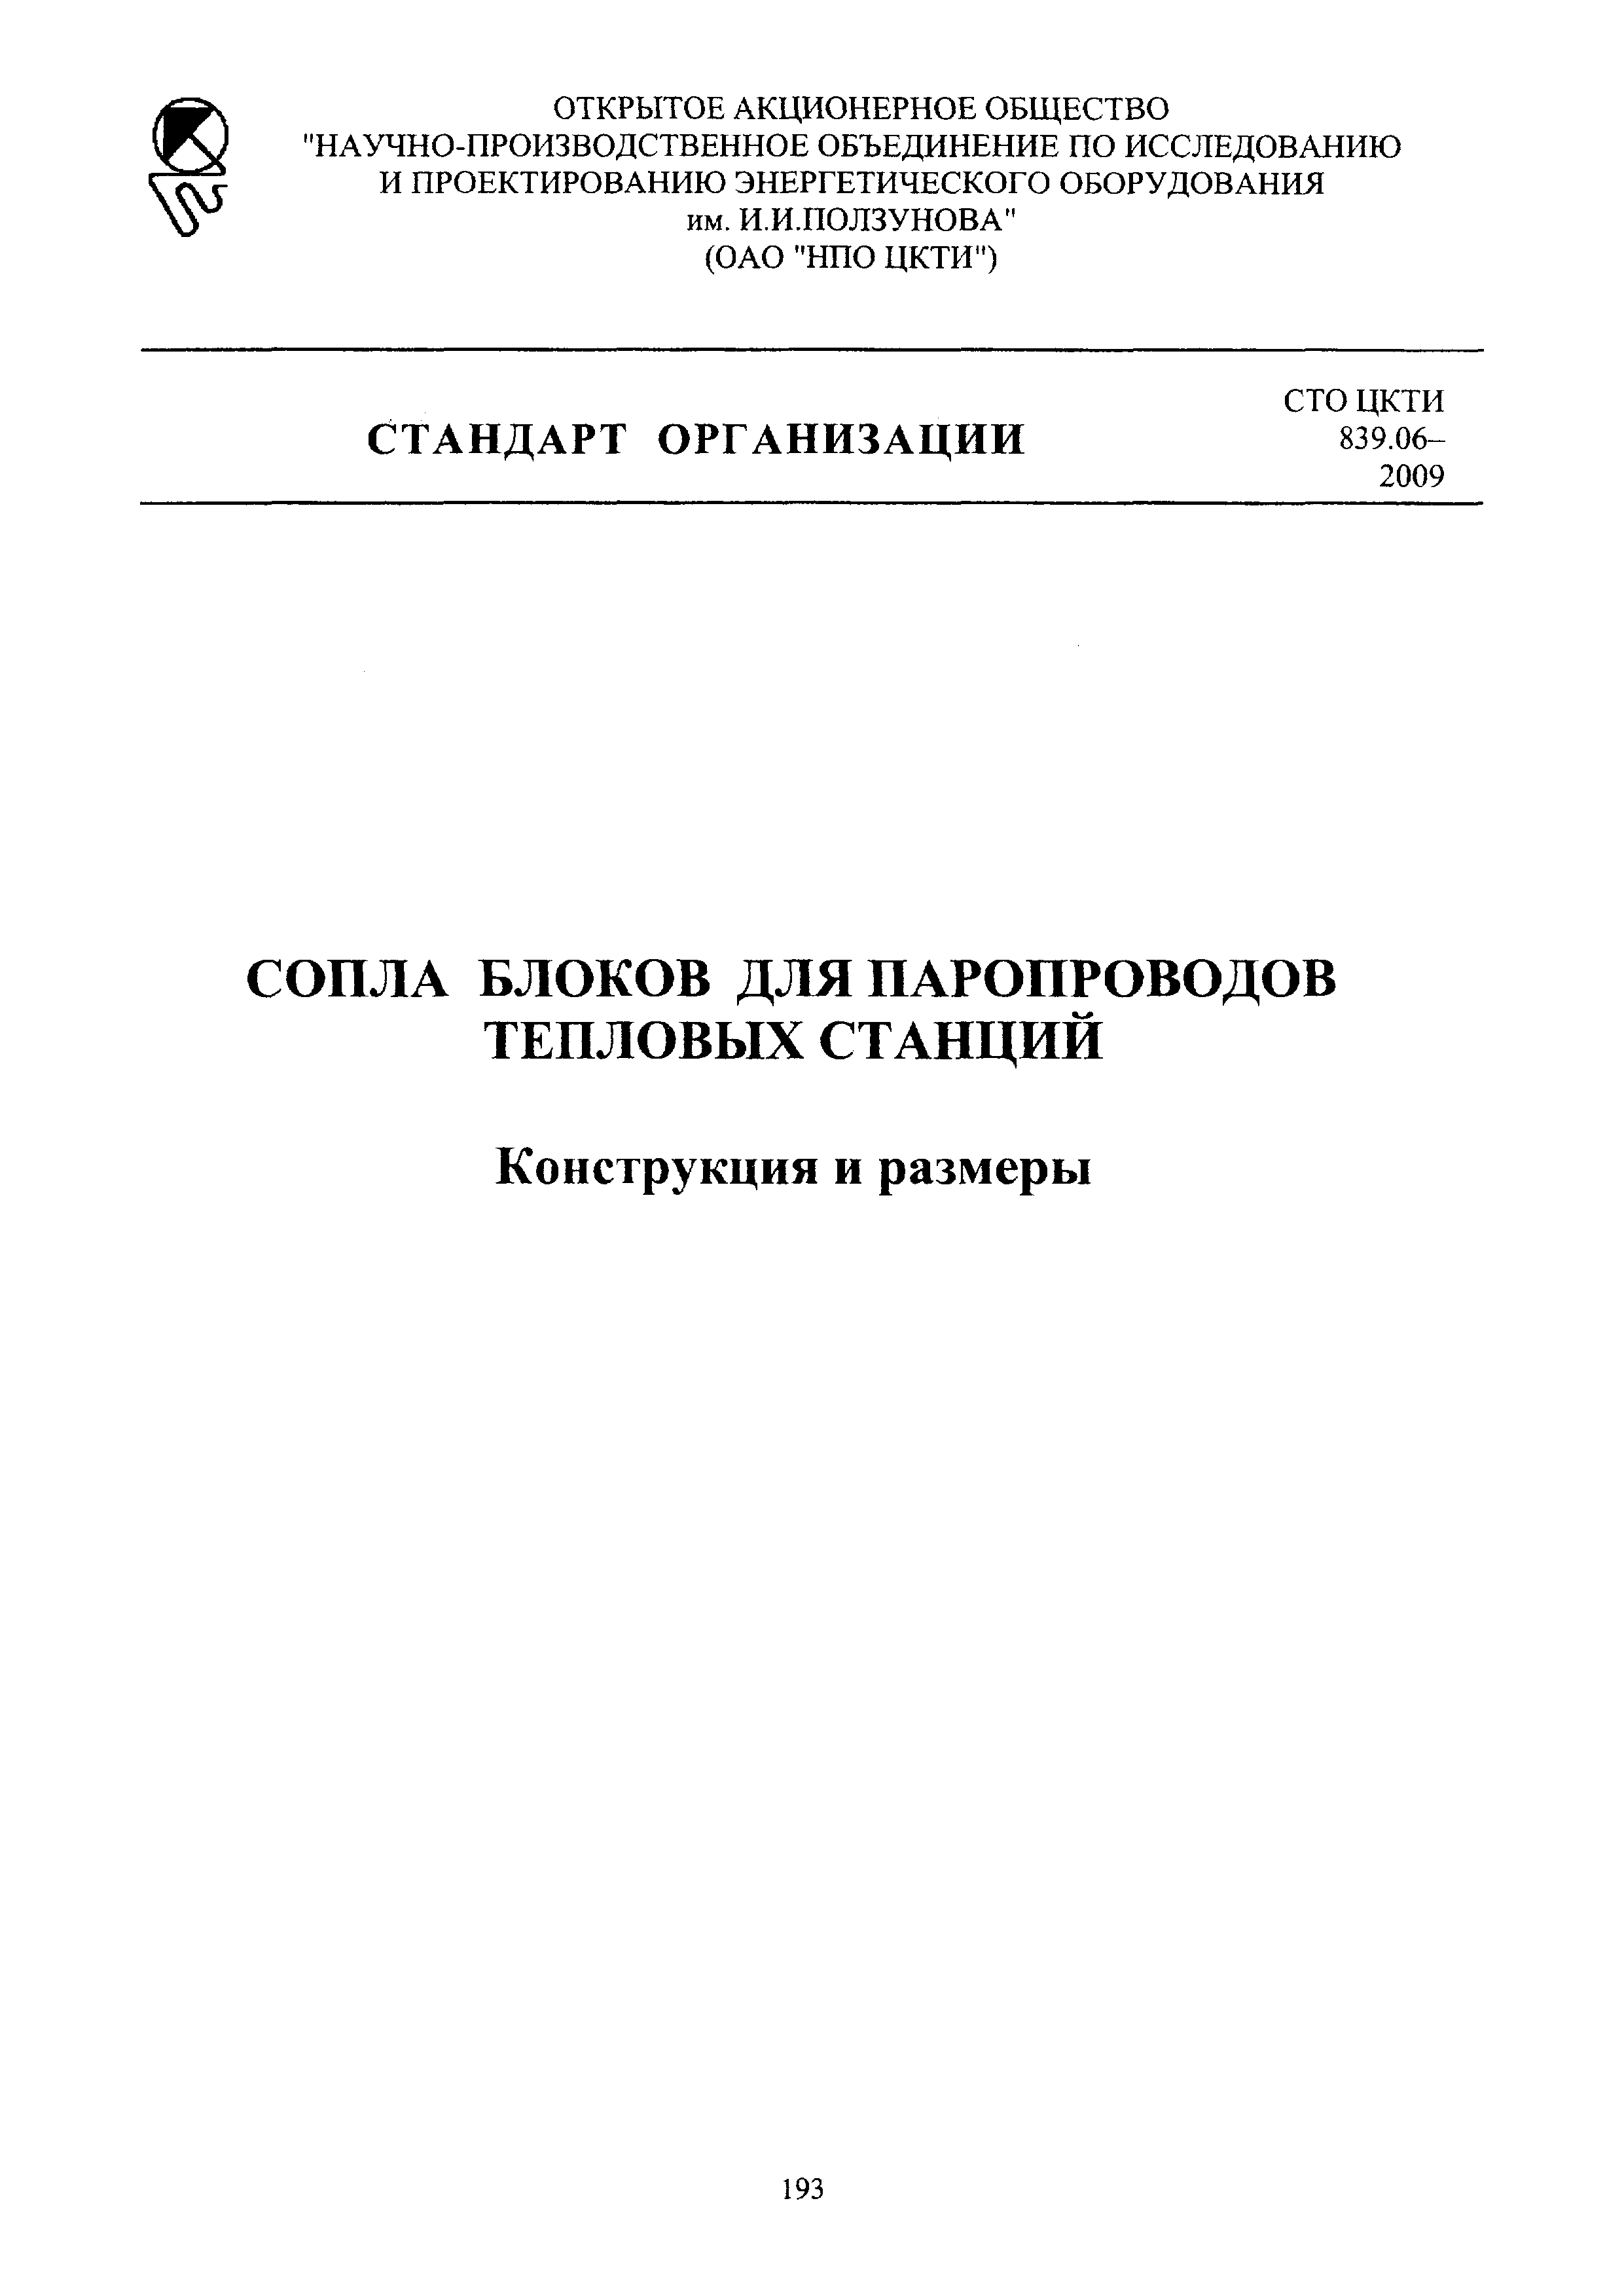 СТО ЦКТИ 839.06-2009